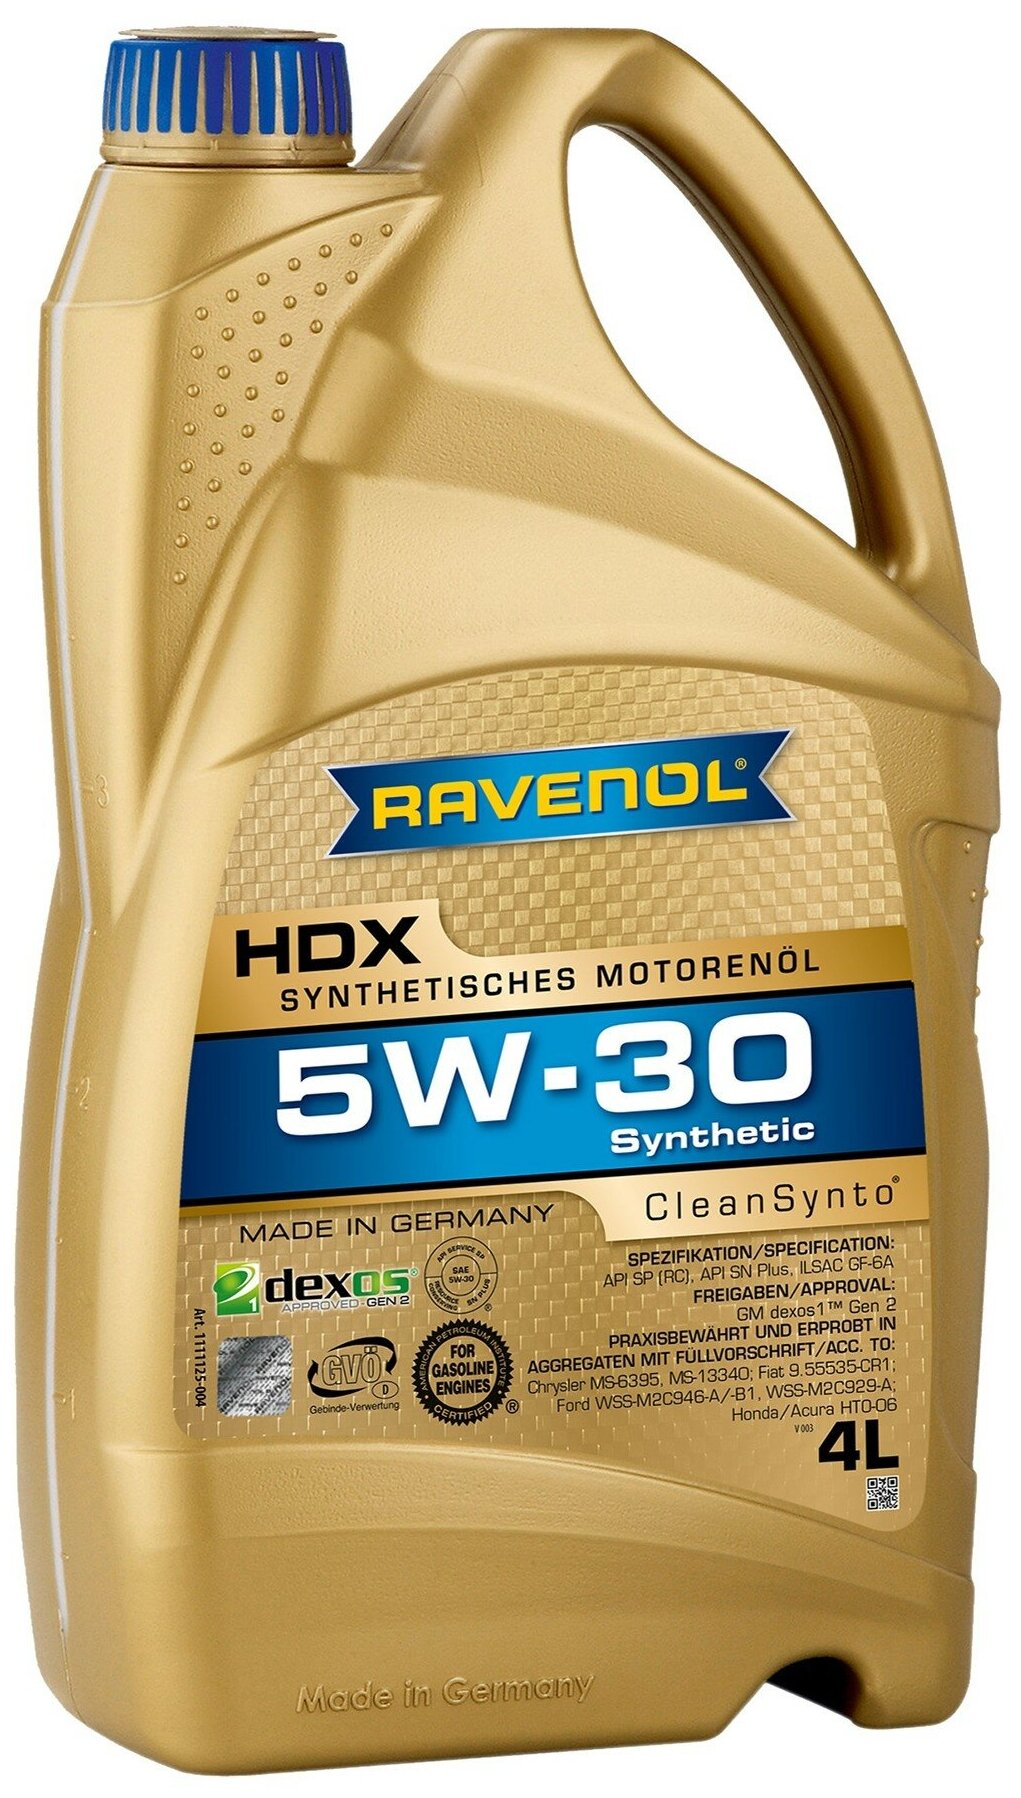 Моторное масло Ravenol HDX 5W-30, синтетическое, 4 л